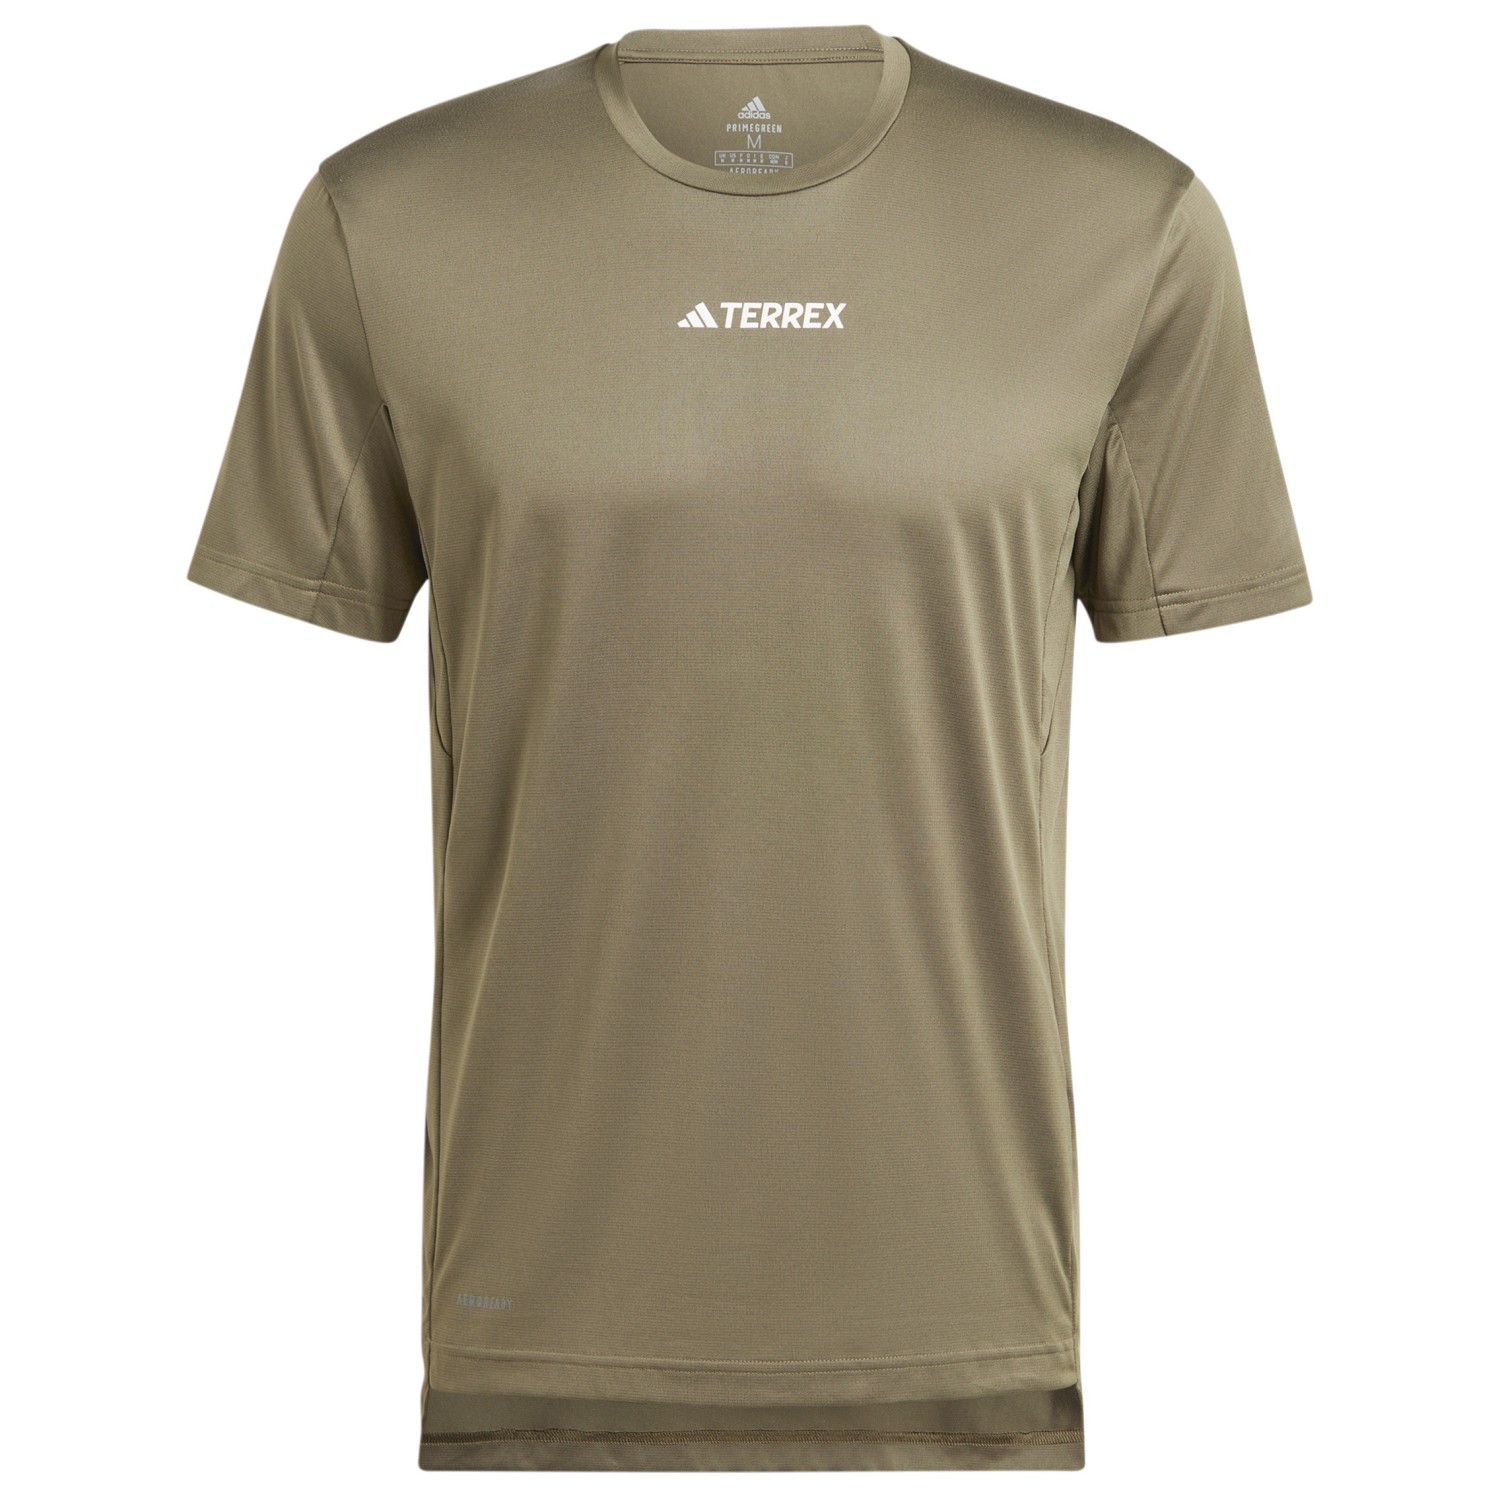 Функциональная рубашка Adidas Terrex Terrex Multi T Shirt, цвет Olive Strata фотографии